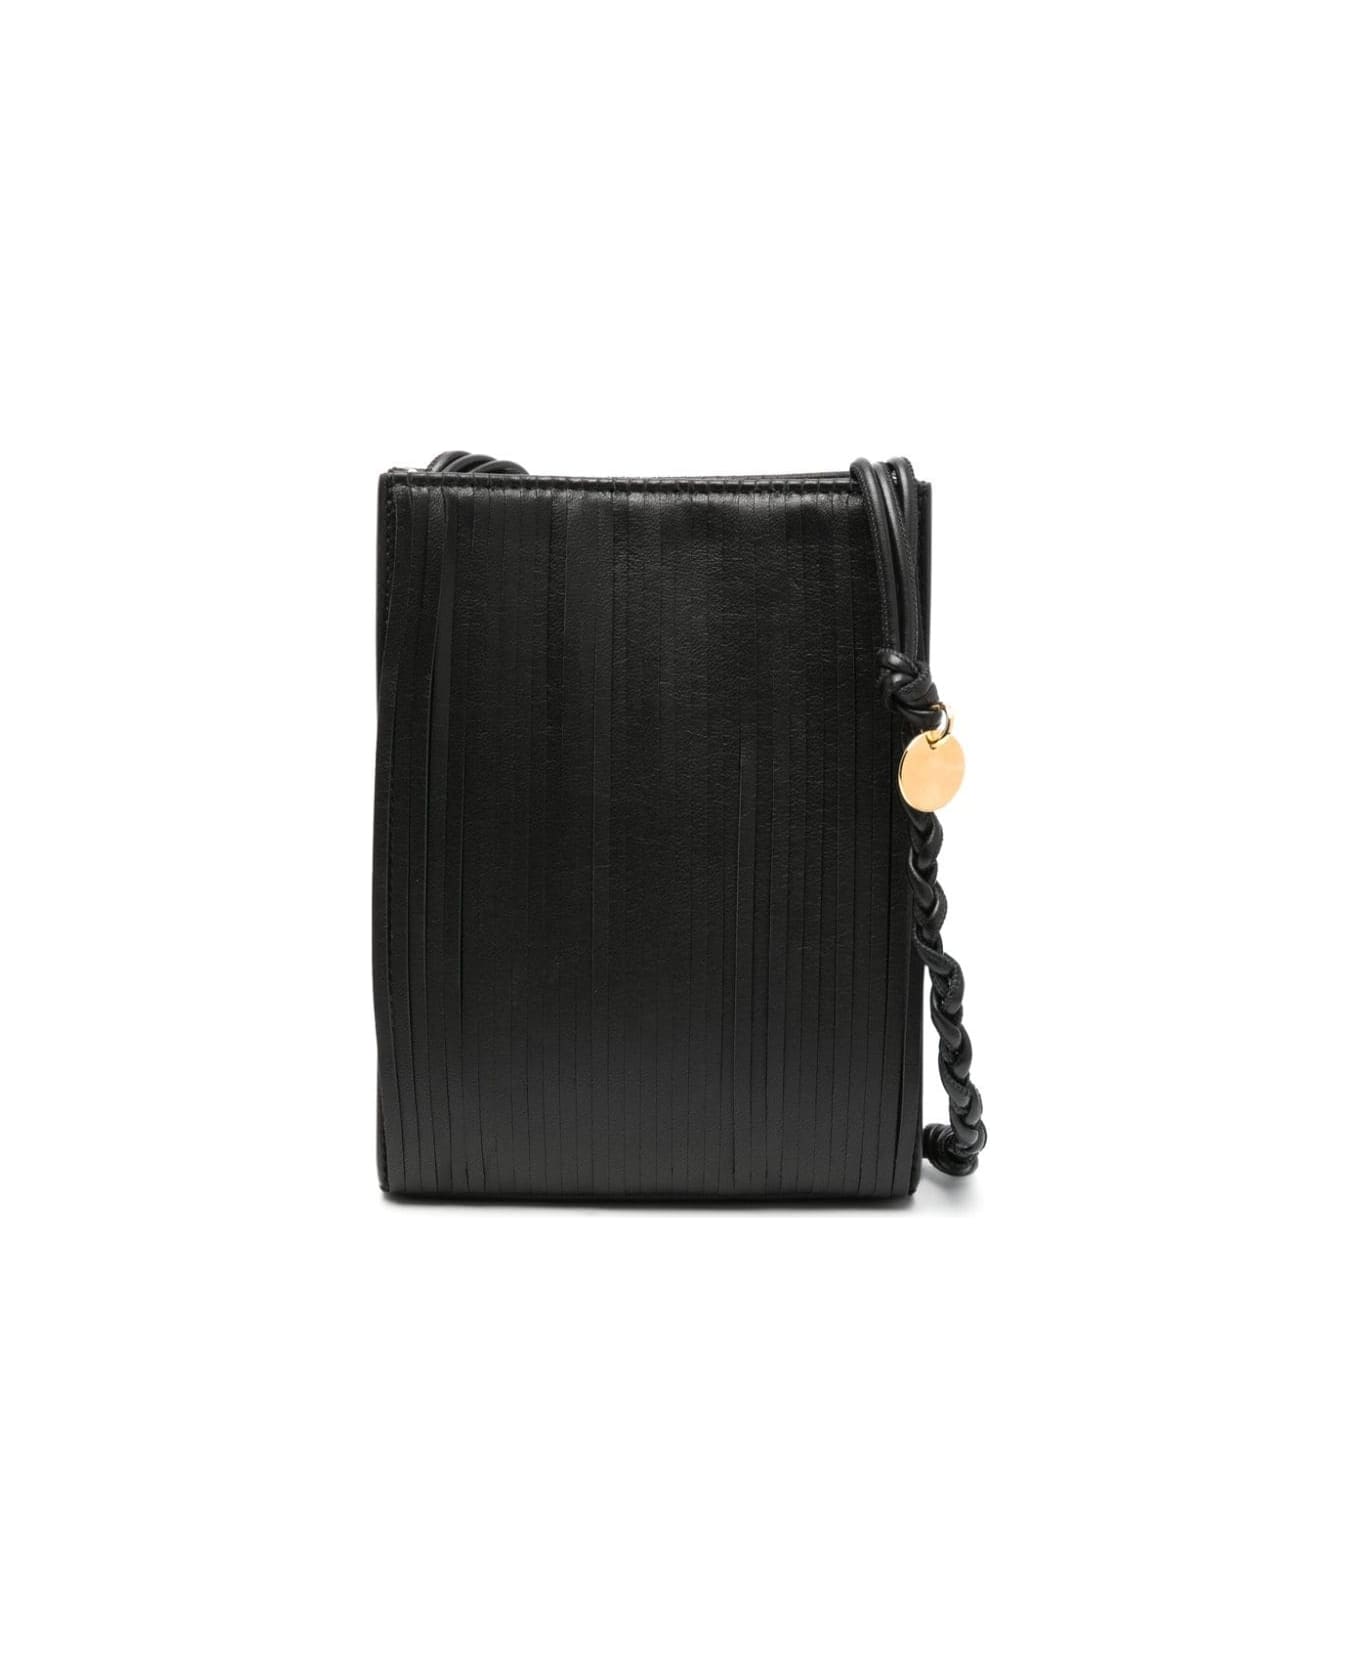 Jil Sander Black Tangle Small Bag - Black